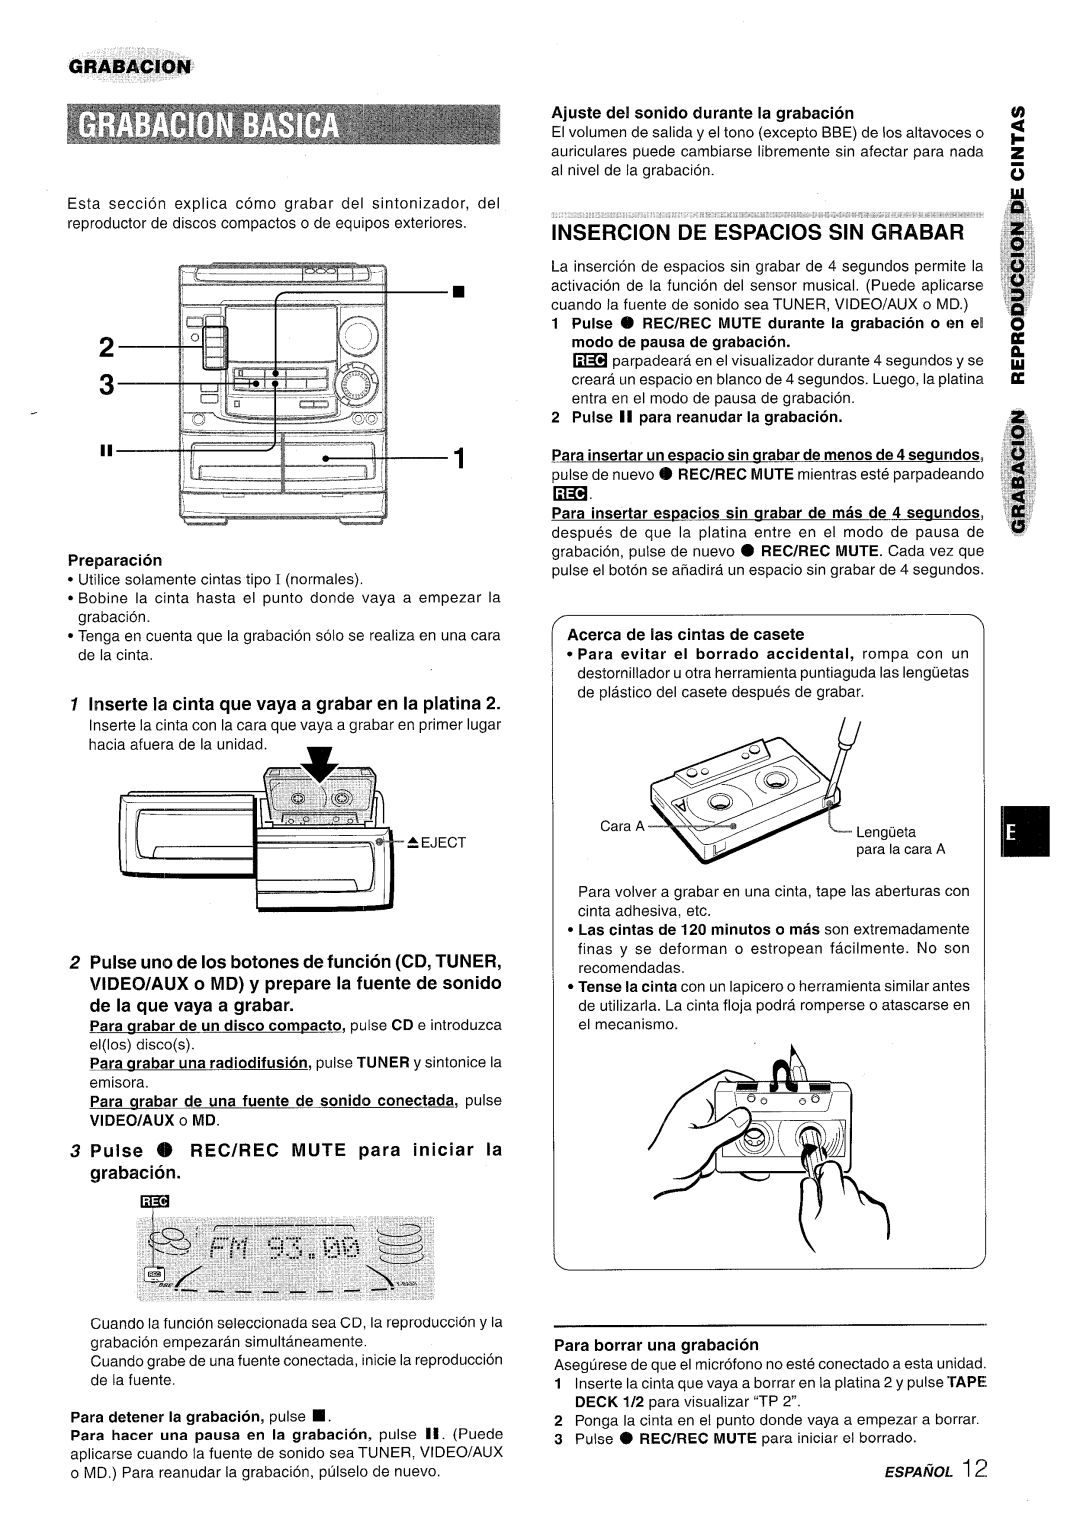 Aiwa NSX-A508 manual INSERCION DE ESPACIOS’klN’G’iiikBAR, Inserte la cinta que vaya a grabar en la platina 